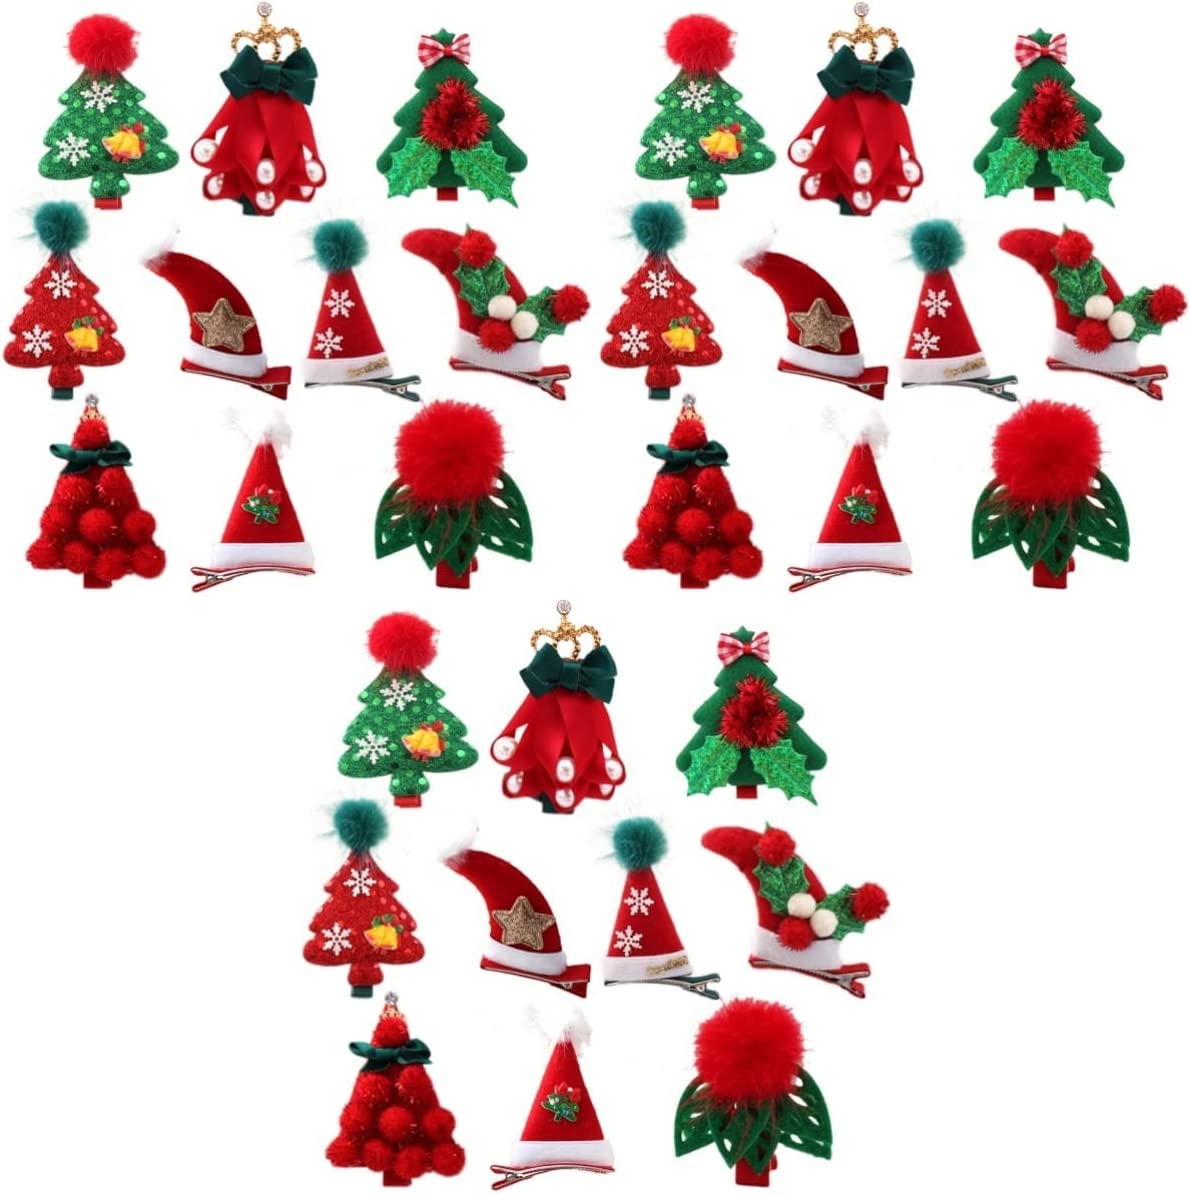 10 Stück Kinder Thema Mini Gefälligkeiten Geschenke niedliche Kinder Urlaub Clips Designs einschließlich Dekoration helle Mädchen zufällig Kopfschmuck Weihnachtsmütze for Favor Tree Style Haarspangen